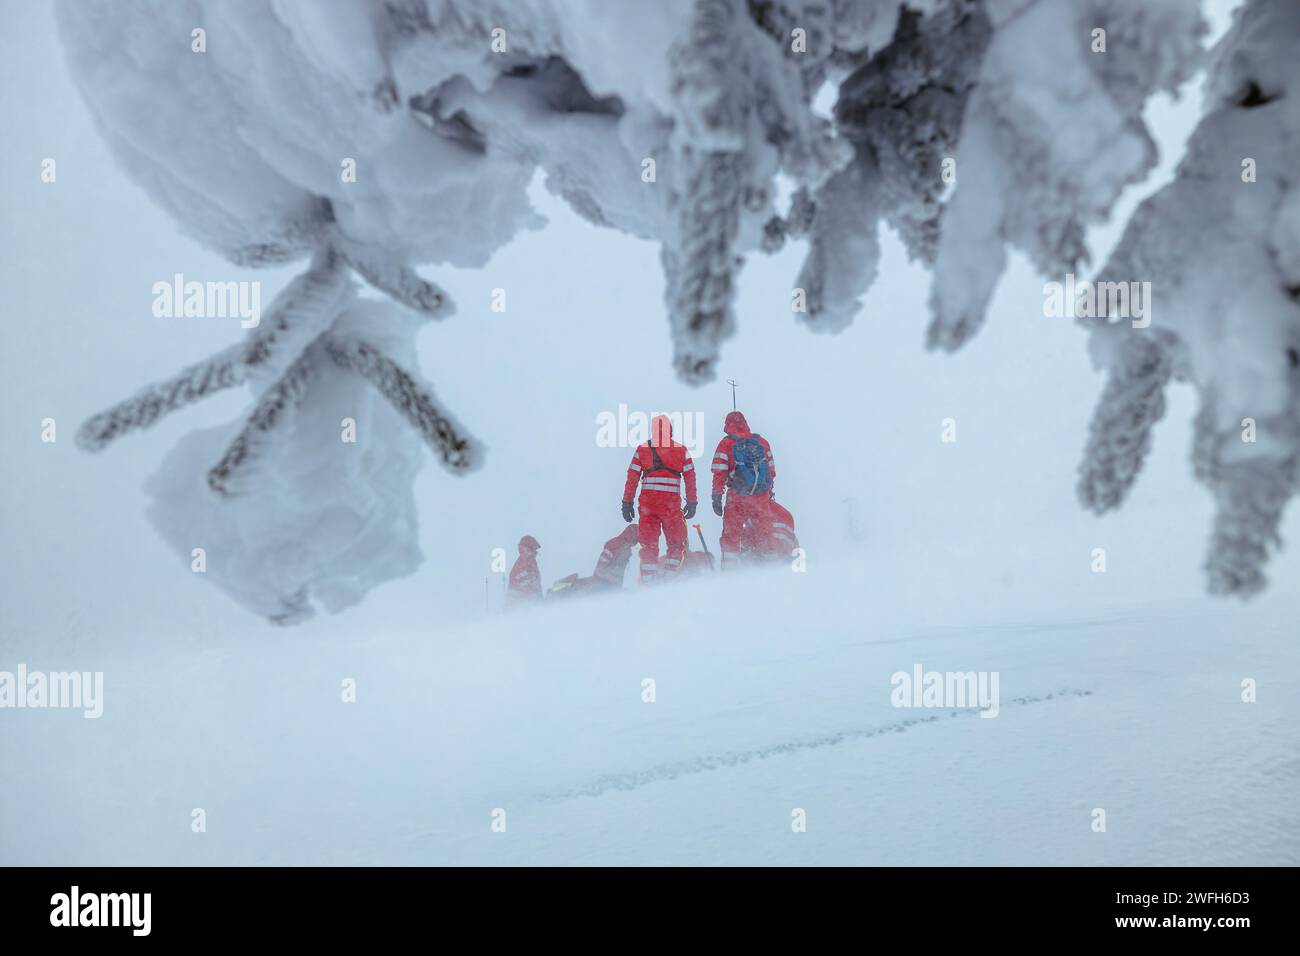 Sanitäter-Team des Rettungsdienstes, das im Winter während des Schneesturms in den Bergen hilft. Themen retten bei extremen Wetterbedingungen. Stockfoto